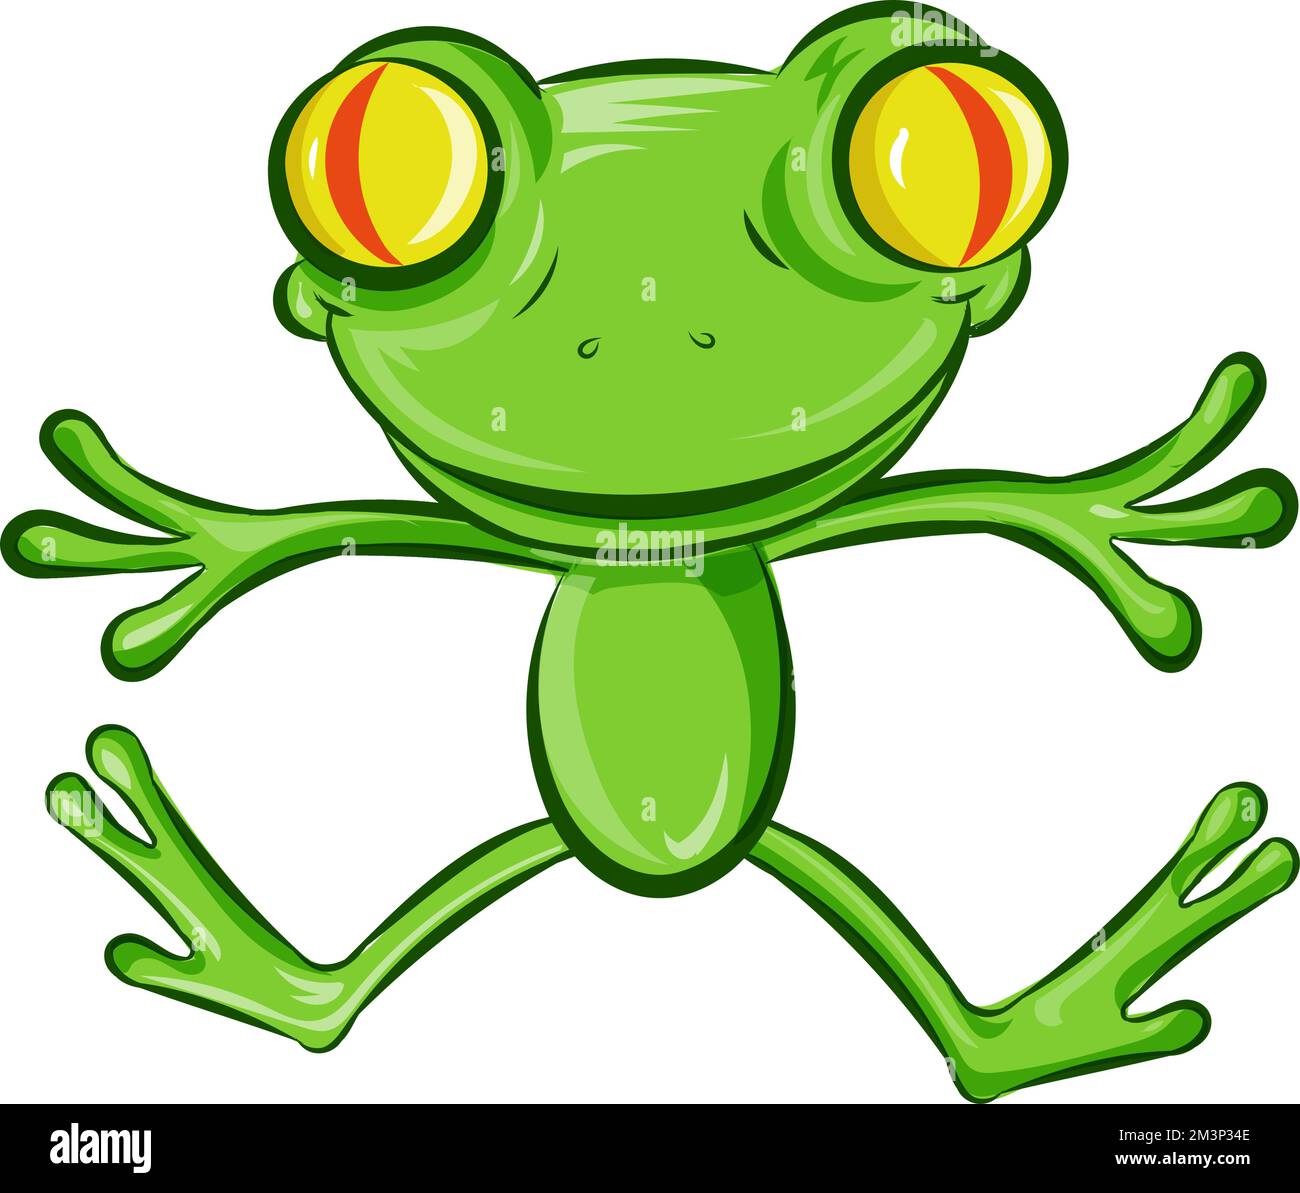 Der Cartoon-Charakter mit dem hüpfenden Frosch. Isoliert auf weiß Stock Vektor